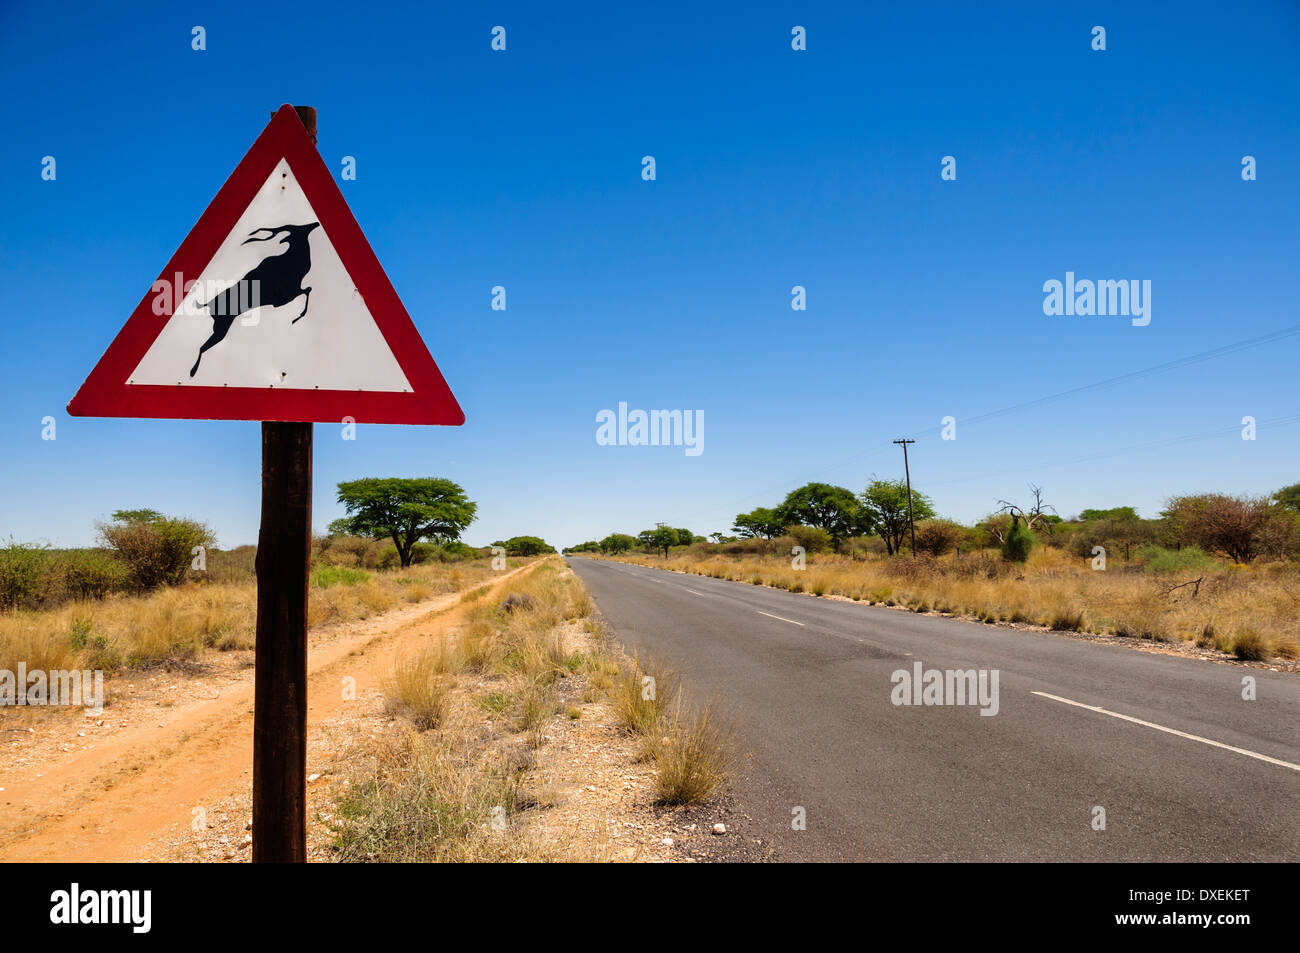 Un avvertimento cartello stradale a prendere attenzione degli animali (Kudu) attraversando la strada provocando potenziali pericoli per gli automobilisti che viaggiano. Foto Stock